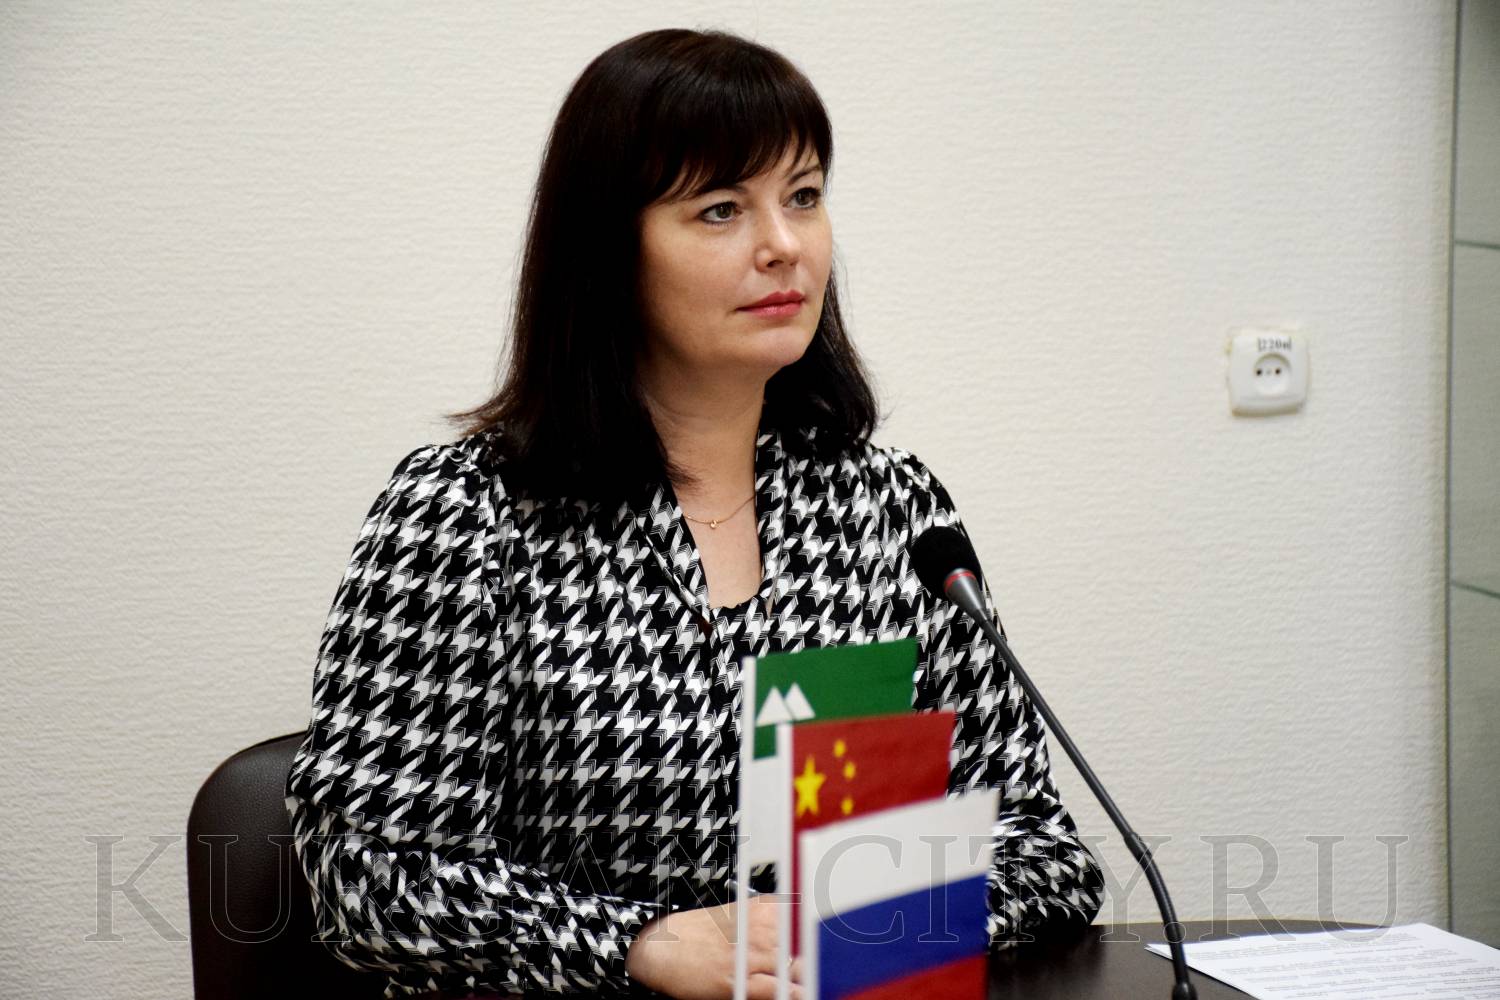 Глава города Елена Ситникова: «Уверена, партнерские отношения с КНР позволят реализовать много выгодных проектов».